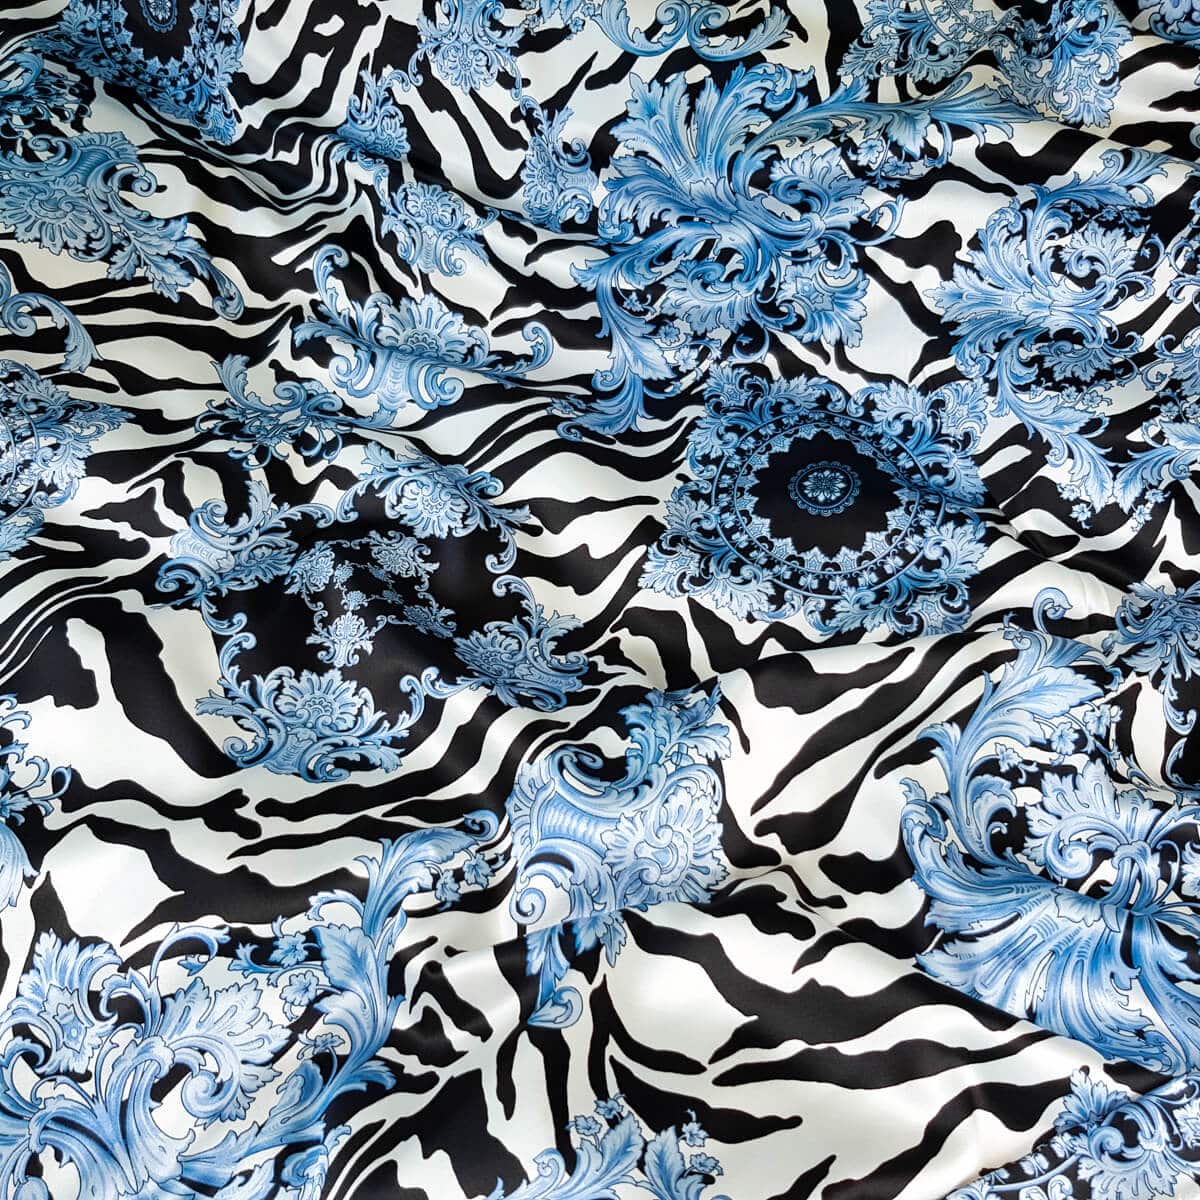 jedwab satyna zebra na wzor versace niebieskie ornamentyC